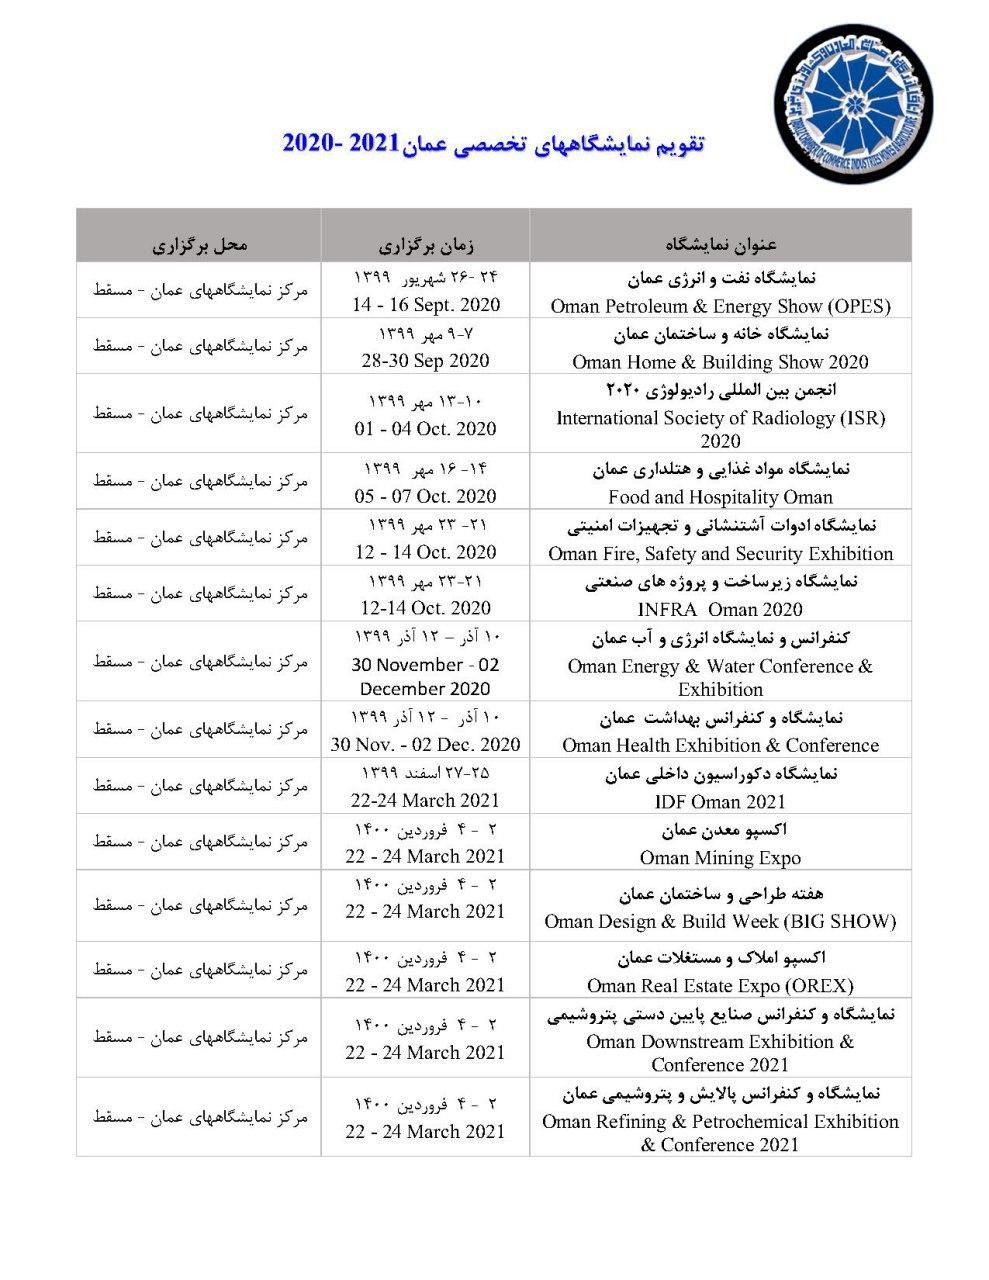 تقویم نمایشگاه های کشور عمان